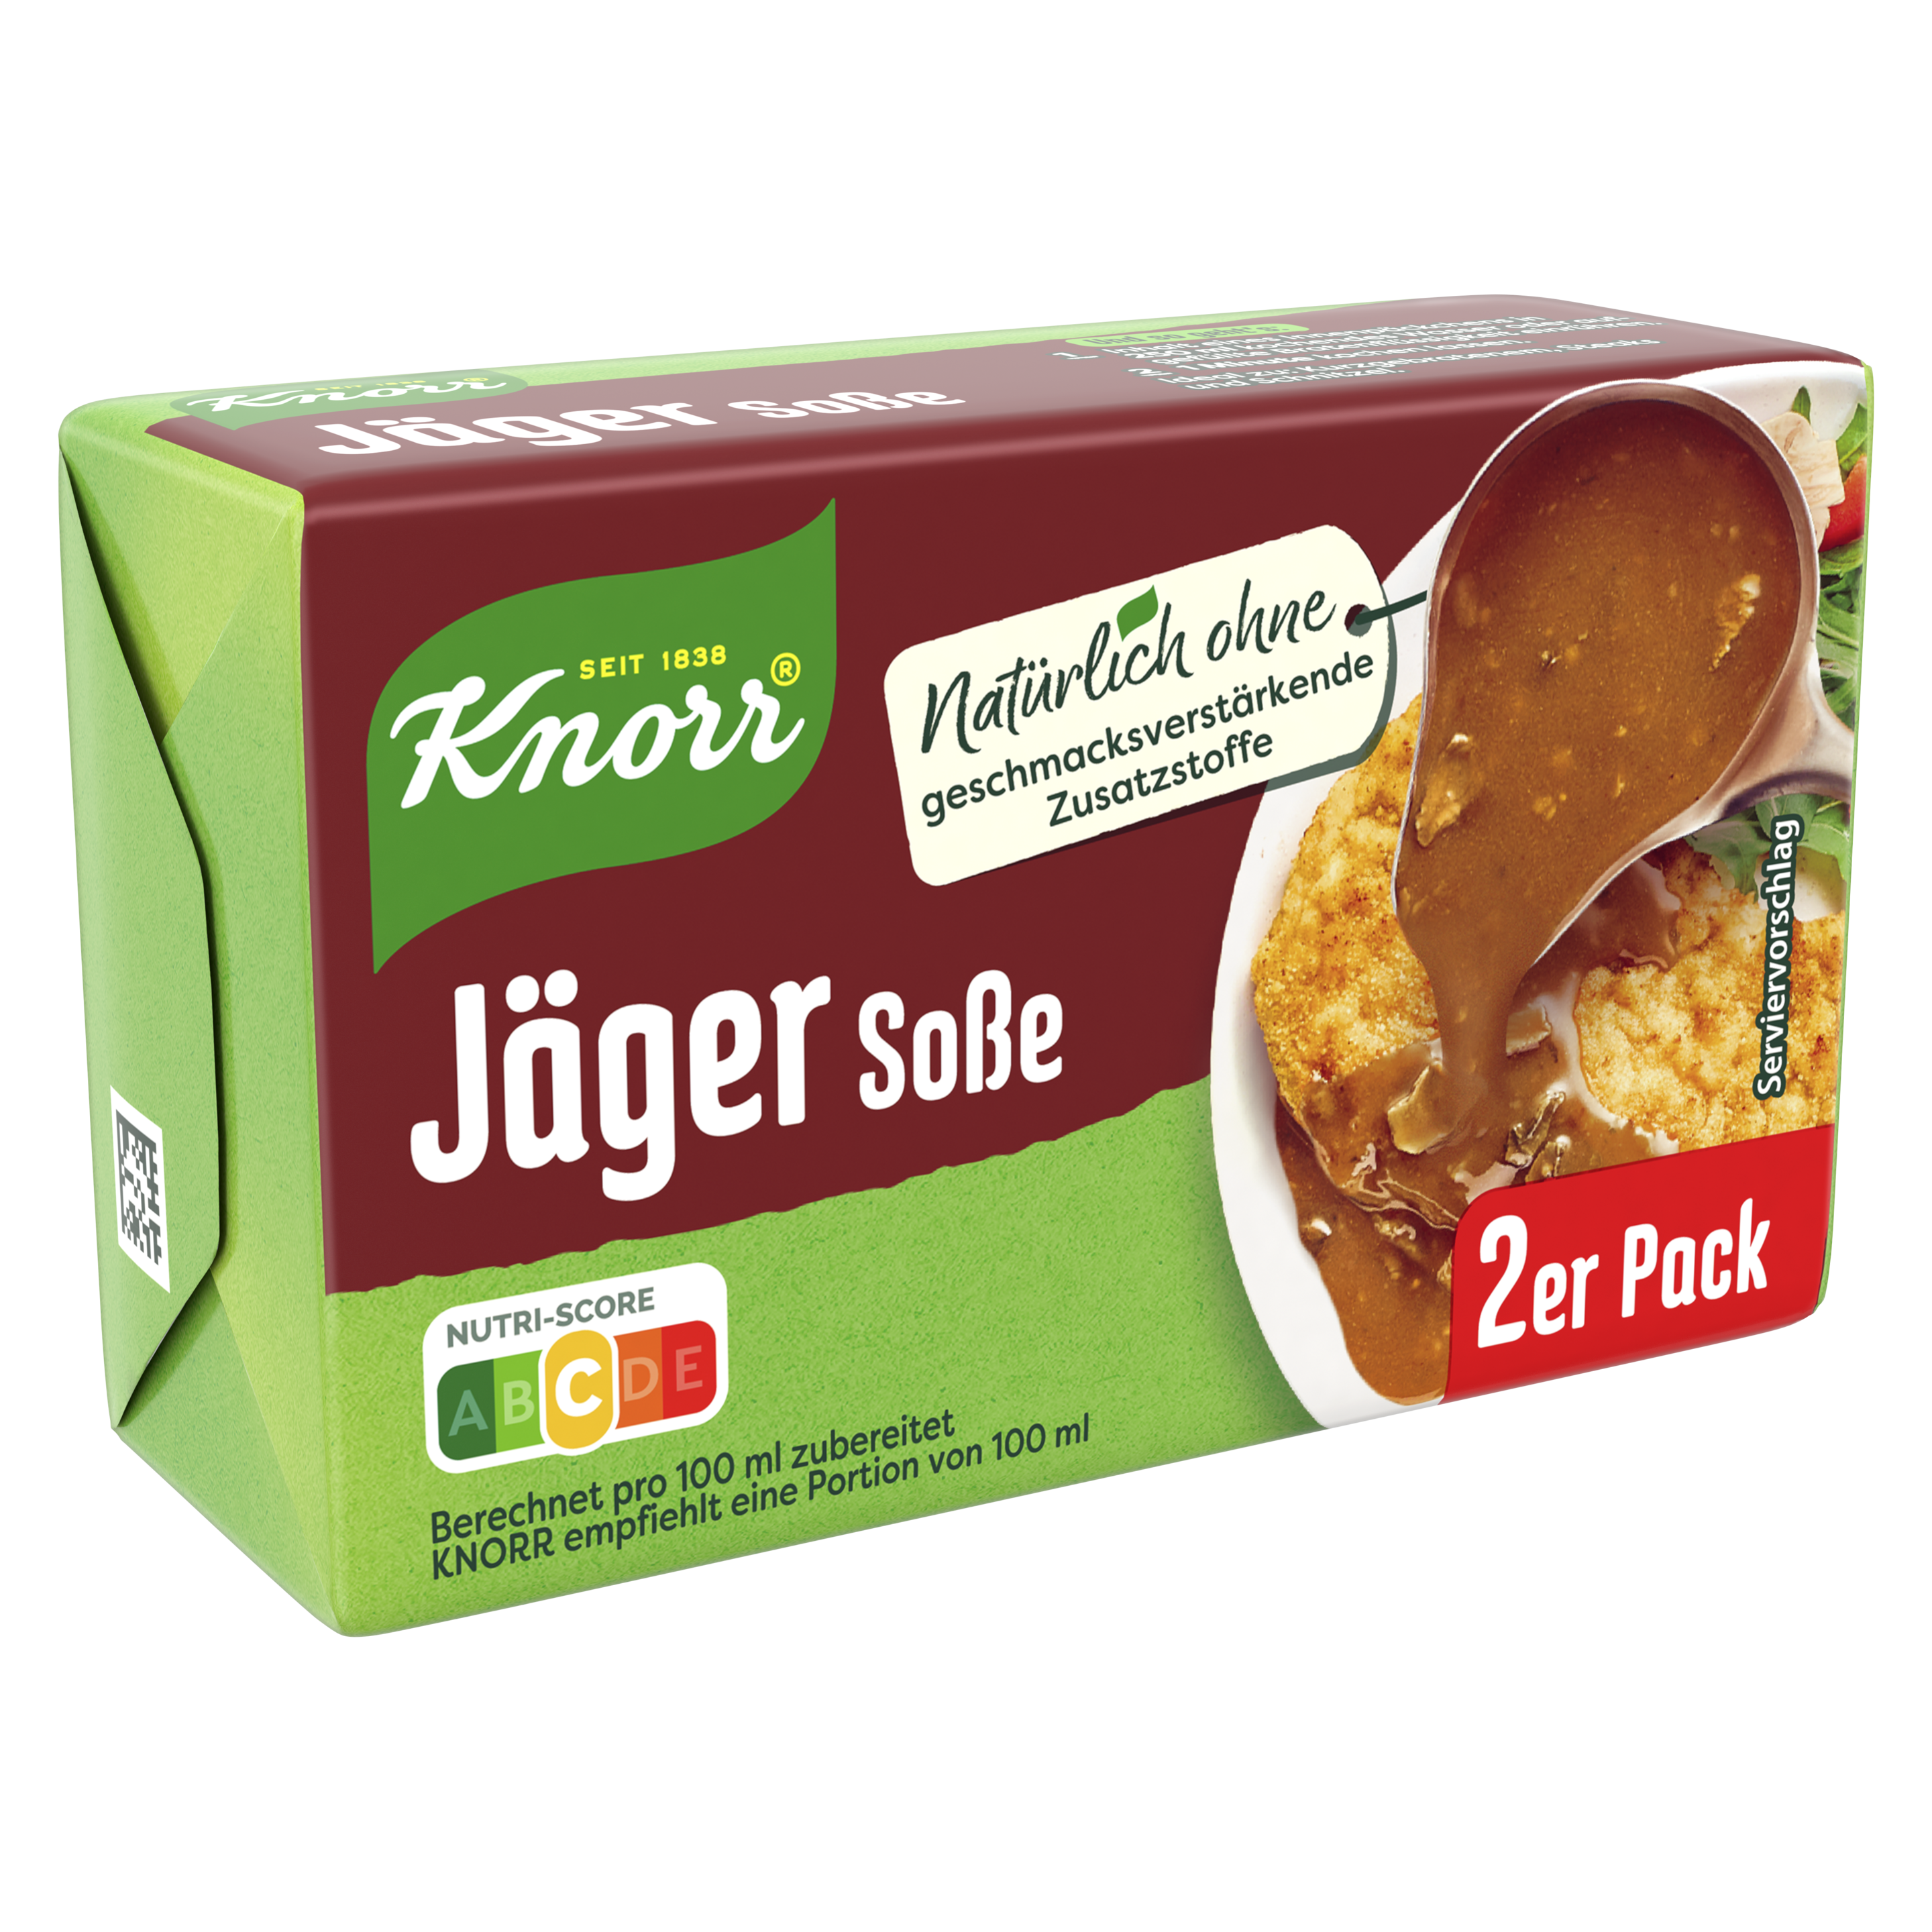 Knorr Deutschland